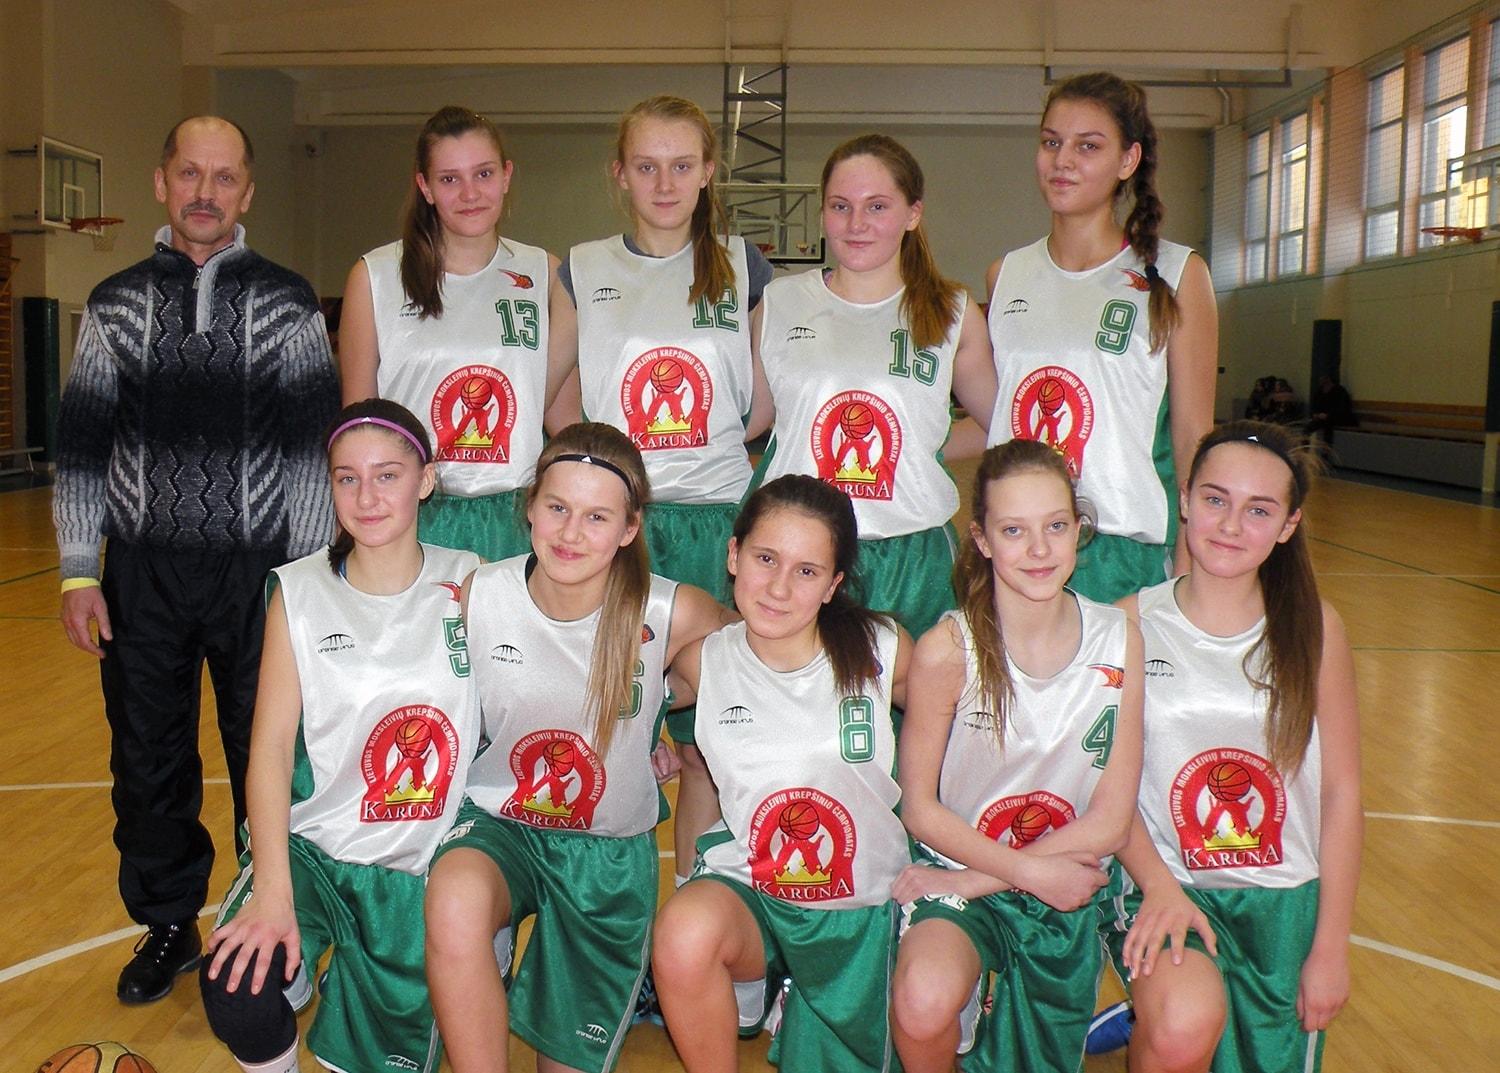 Tarpzoninės merginų krepšinio varžybos - Plungėje / Ukmergės merginų krepšinio komanda